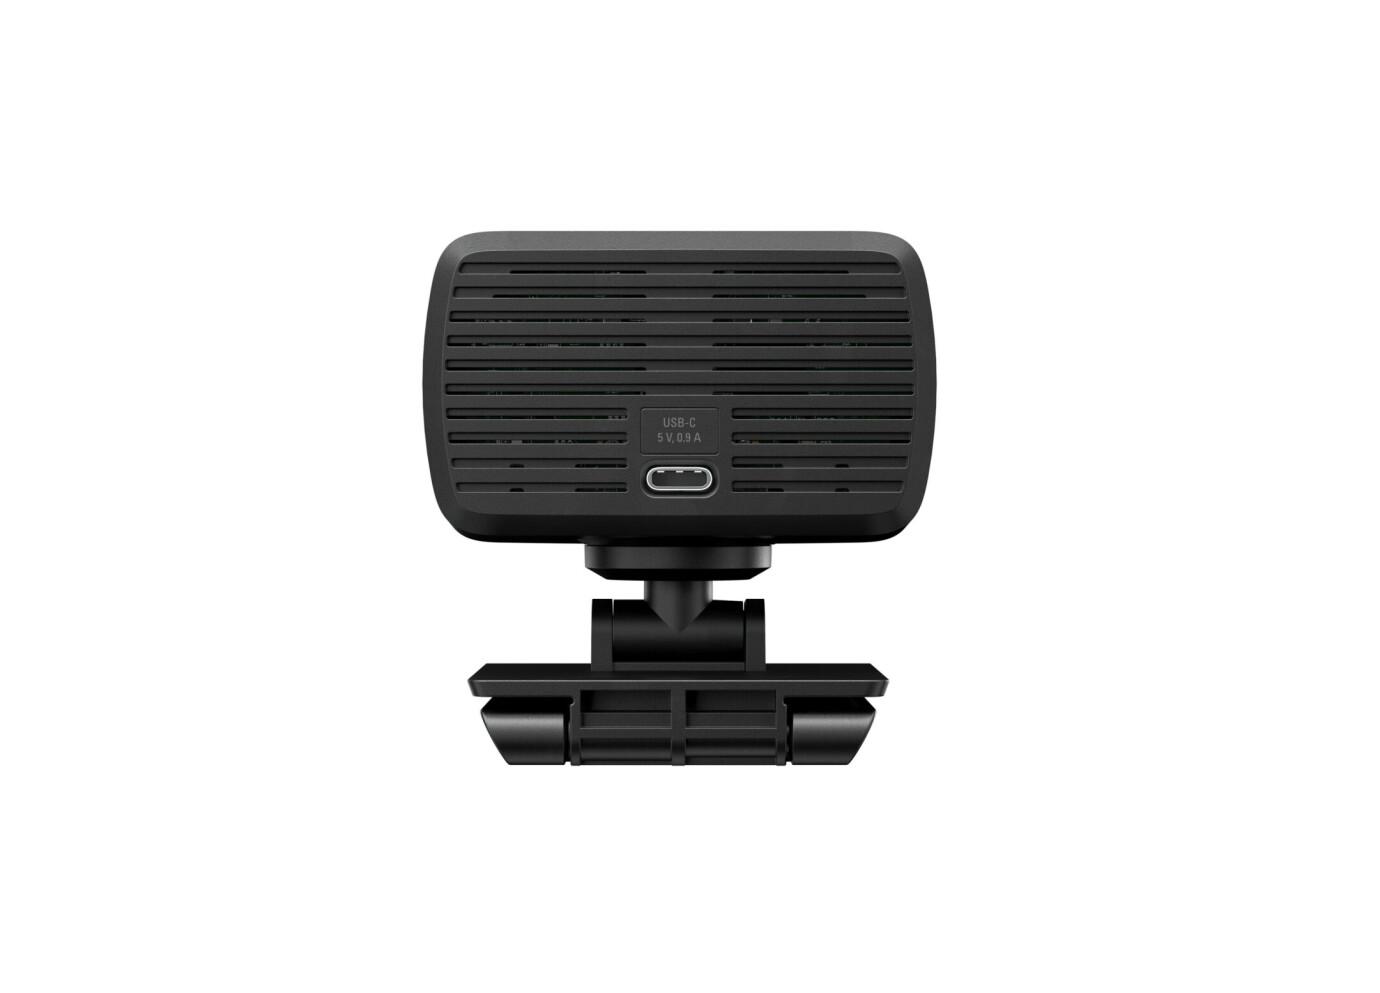 Vorschau: Elgato Facecam Premium Full HD Webcam - 1080p, 30fps, Sichtfeld 82°